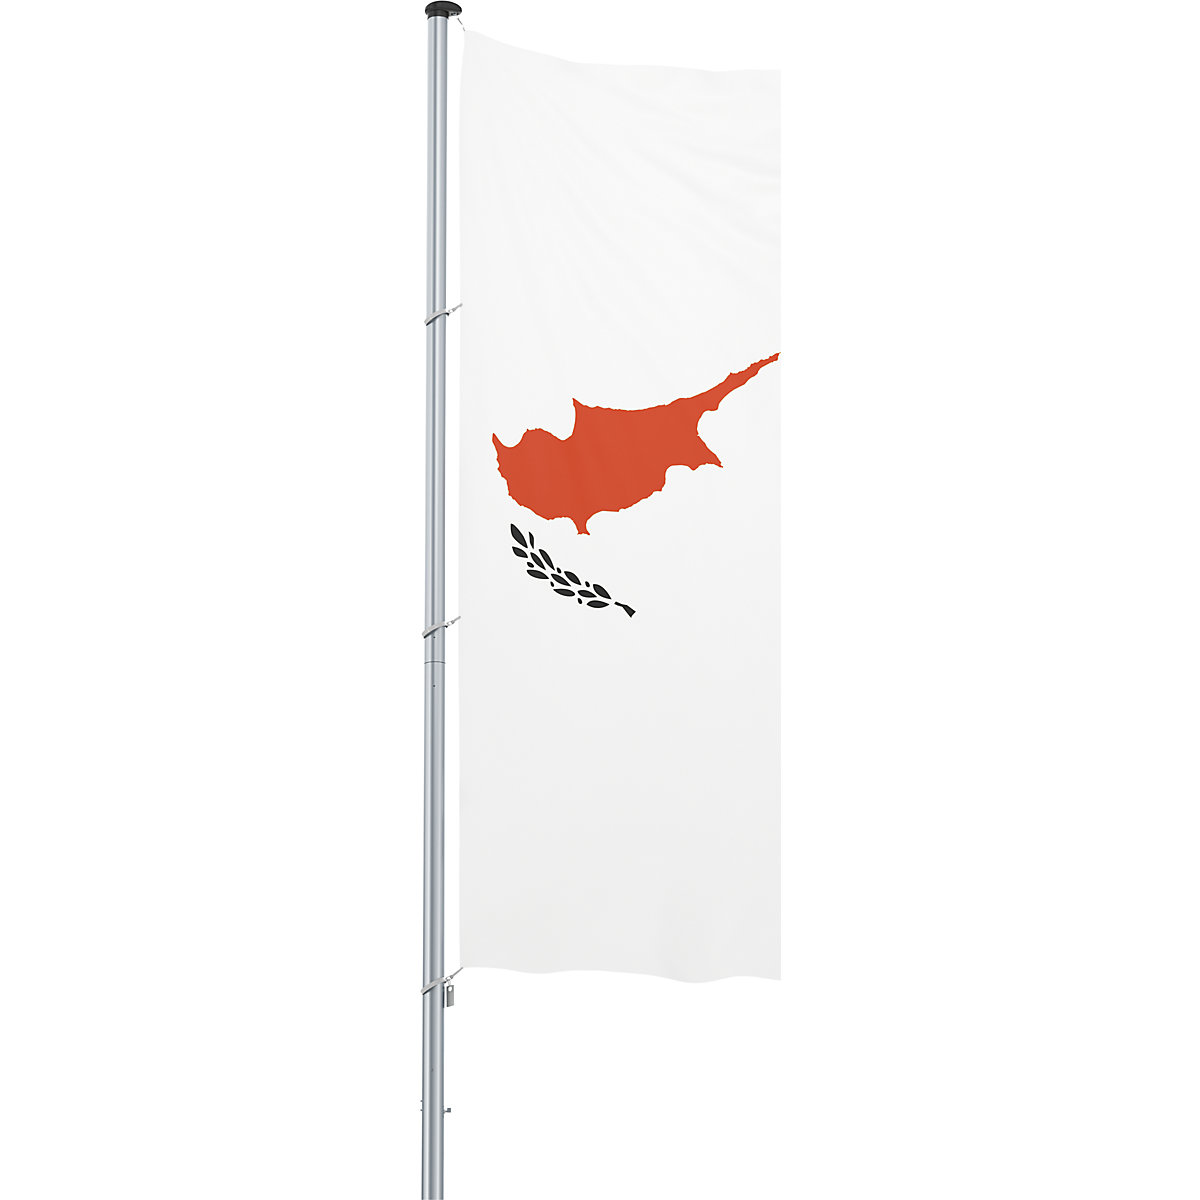 Bandeira para içar/bandeira nacional – Mannus, formato 1,2 x 3 m, Chipre-21